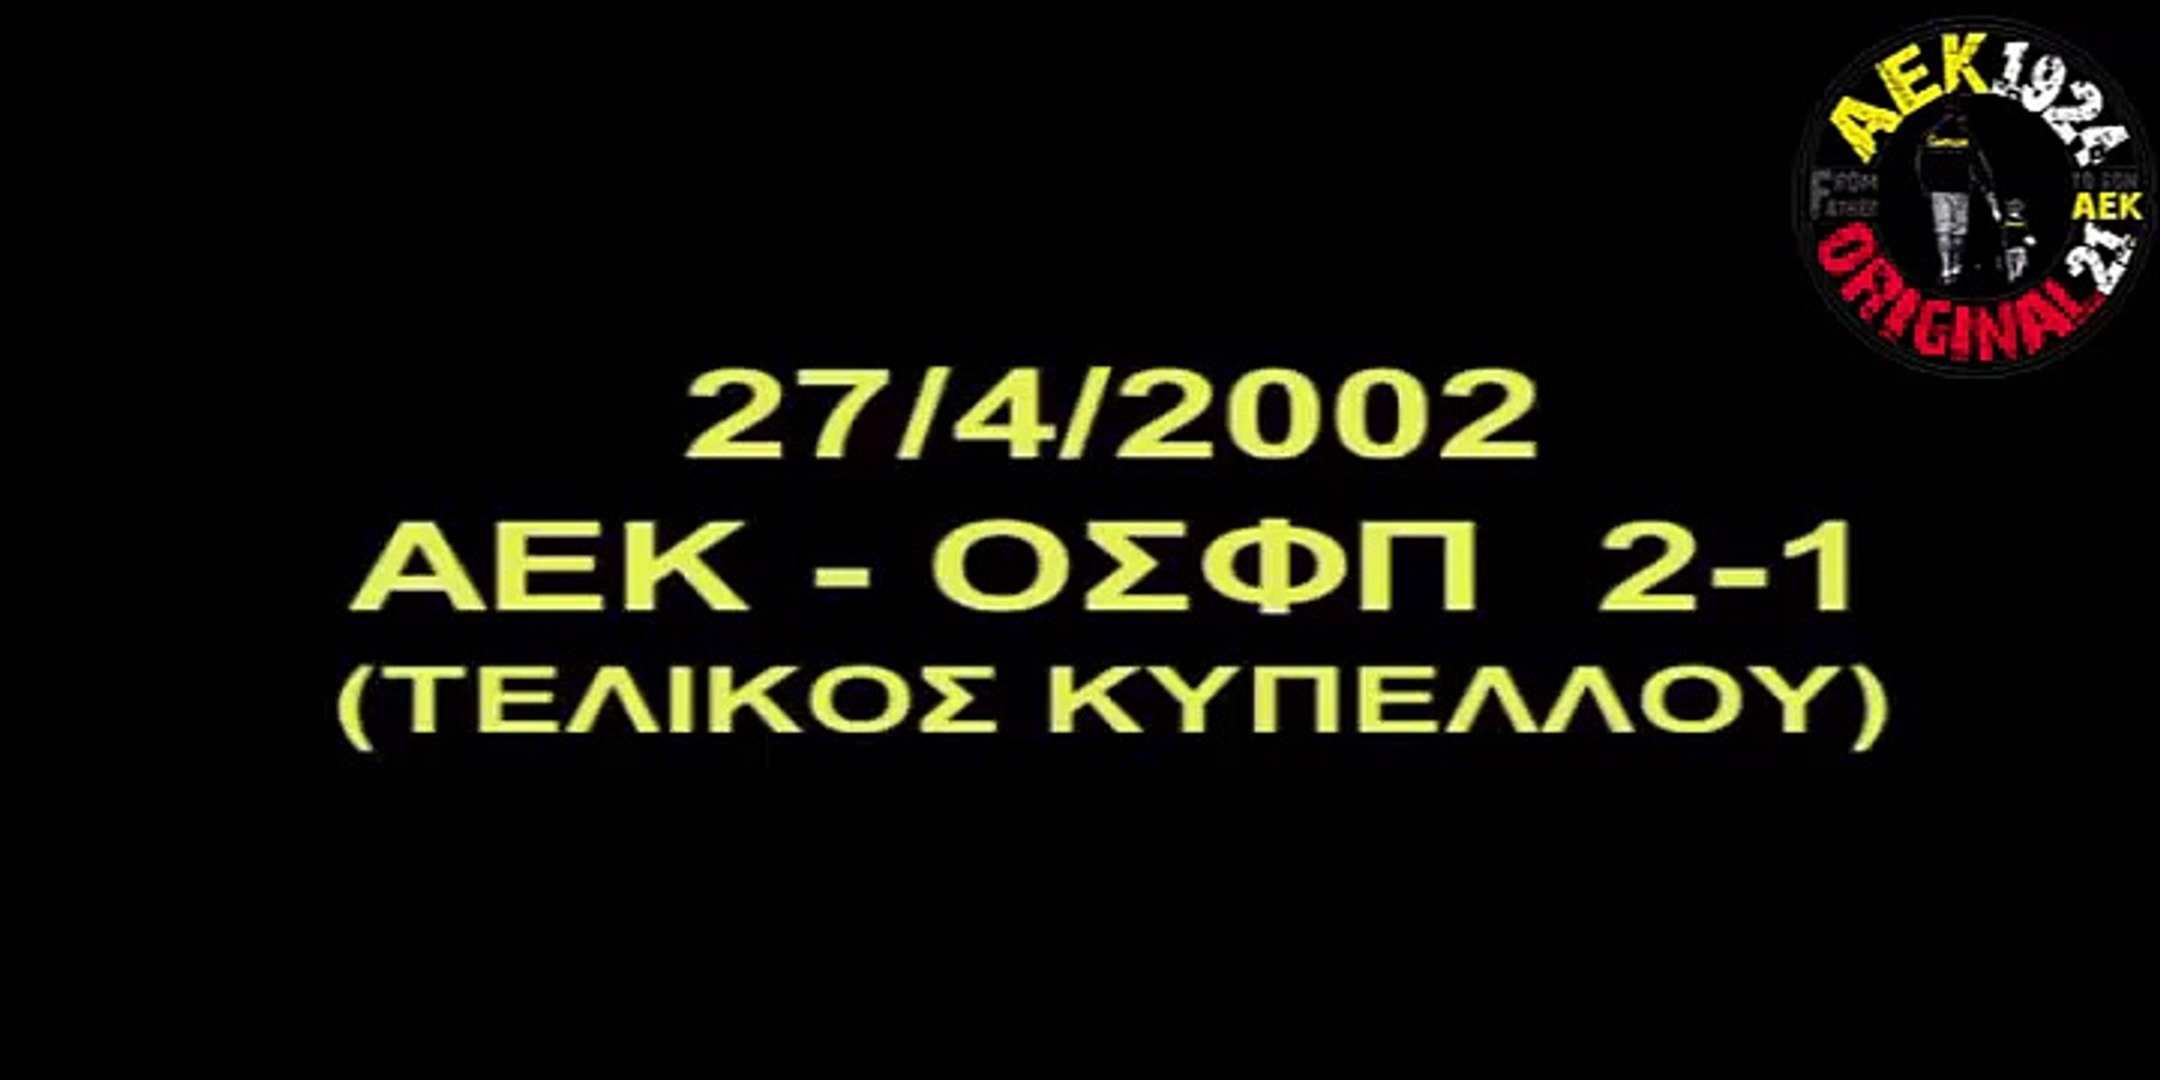 ΑΕΚ - Ολυμπιακός 2-1 ΤΕΛΙΚΟΣ ΚΥΠΕΛΛΟΥ 2002 - video Dailymotion